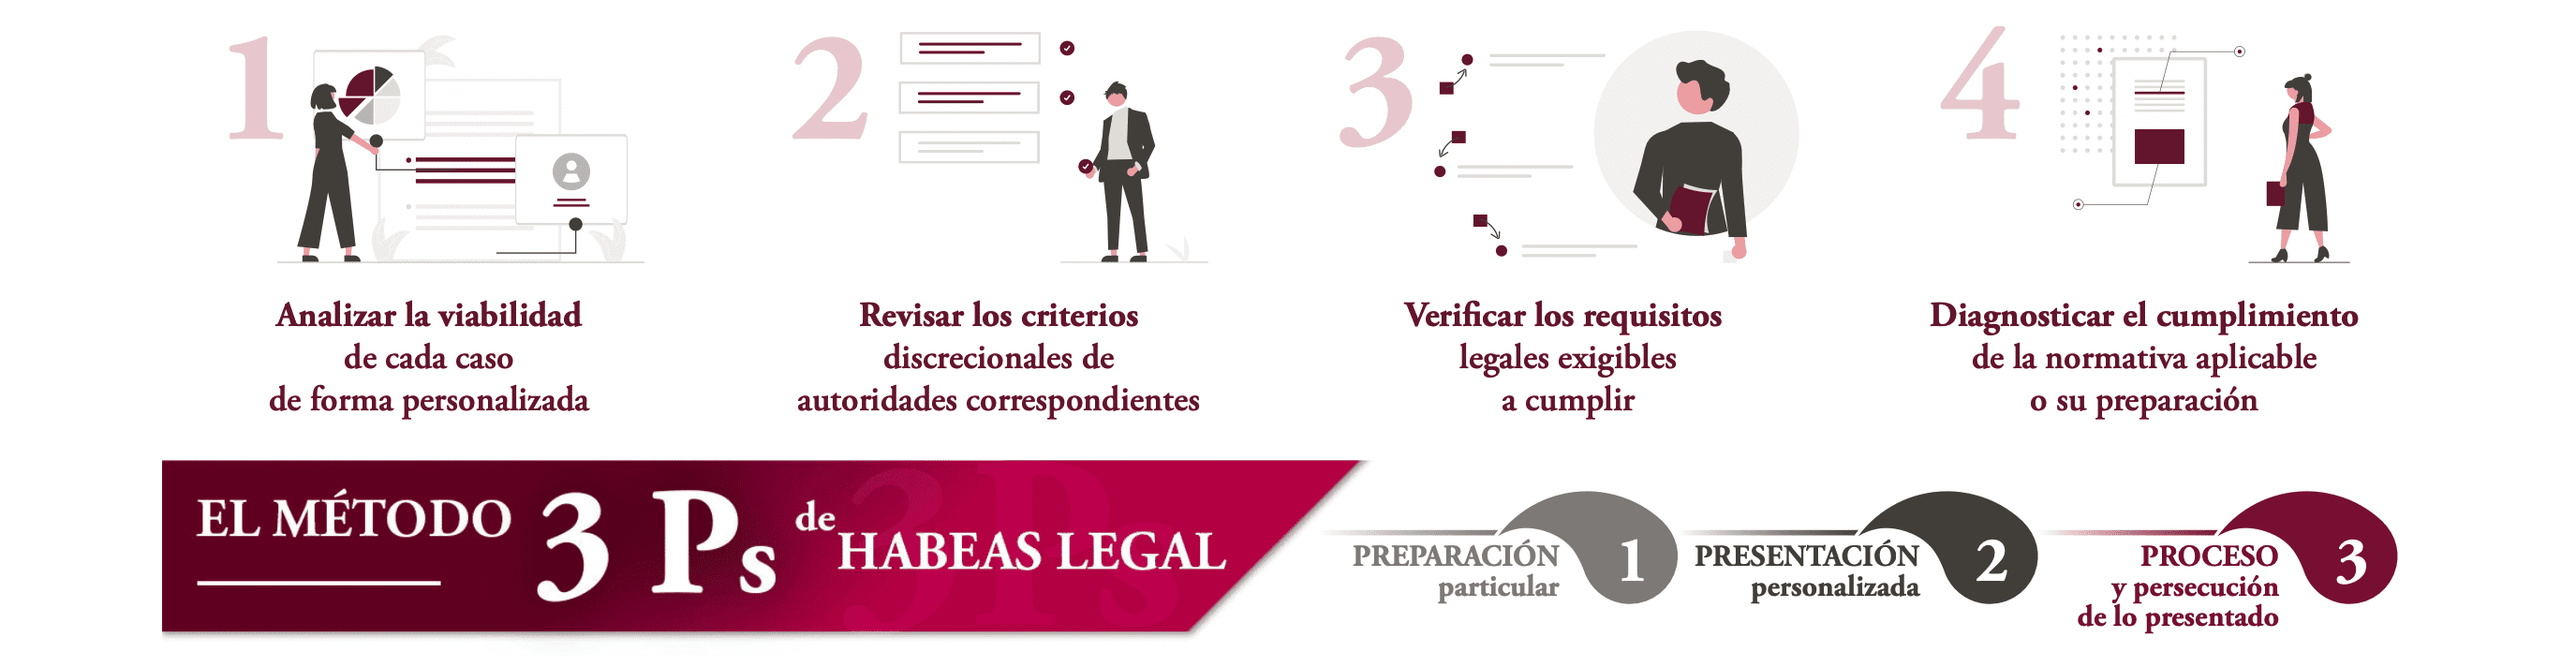 ASESORIA LEGAL HABEASLEGAL ABOGADOS BARCELONA INMIGRACION NACIONALIDAD ESPANOLA 1 1 - Reserva de Asesoría Legal Habeas Legal Company